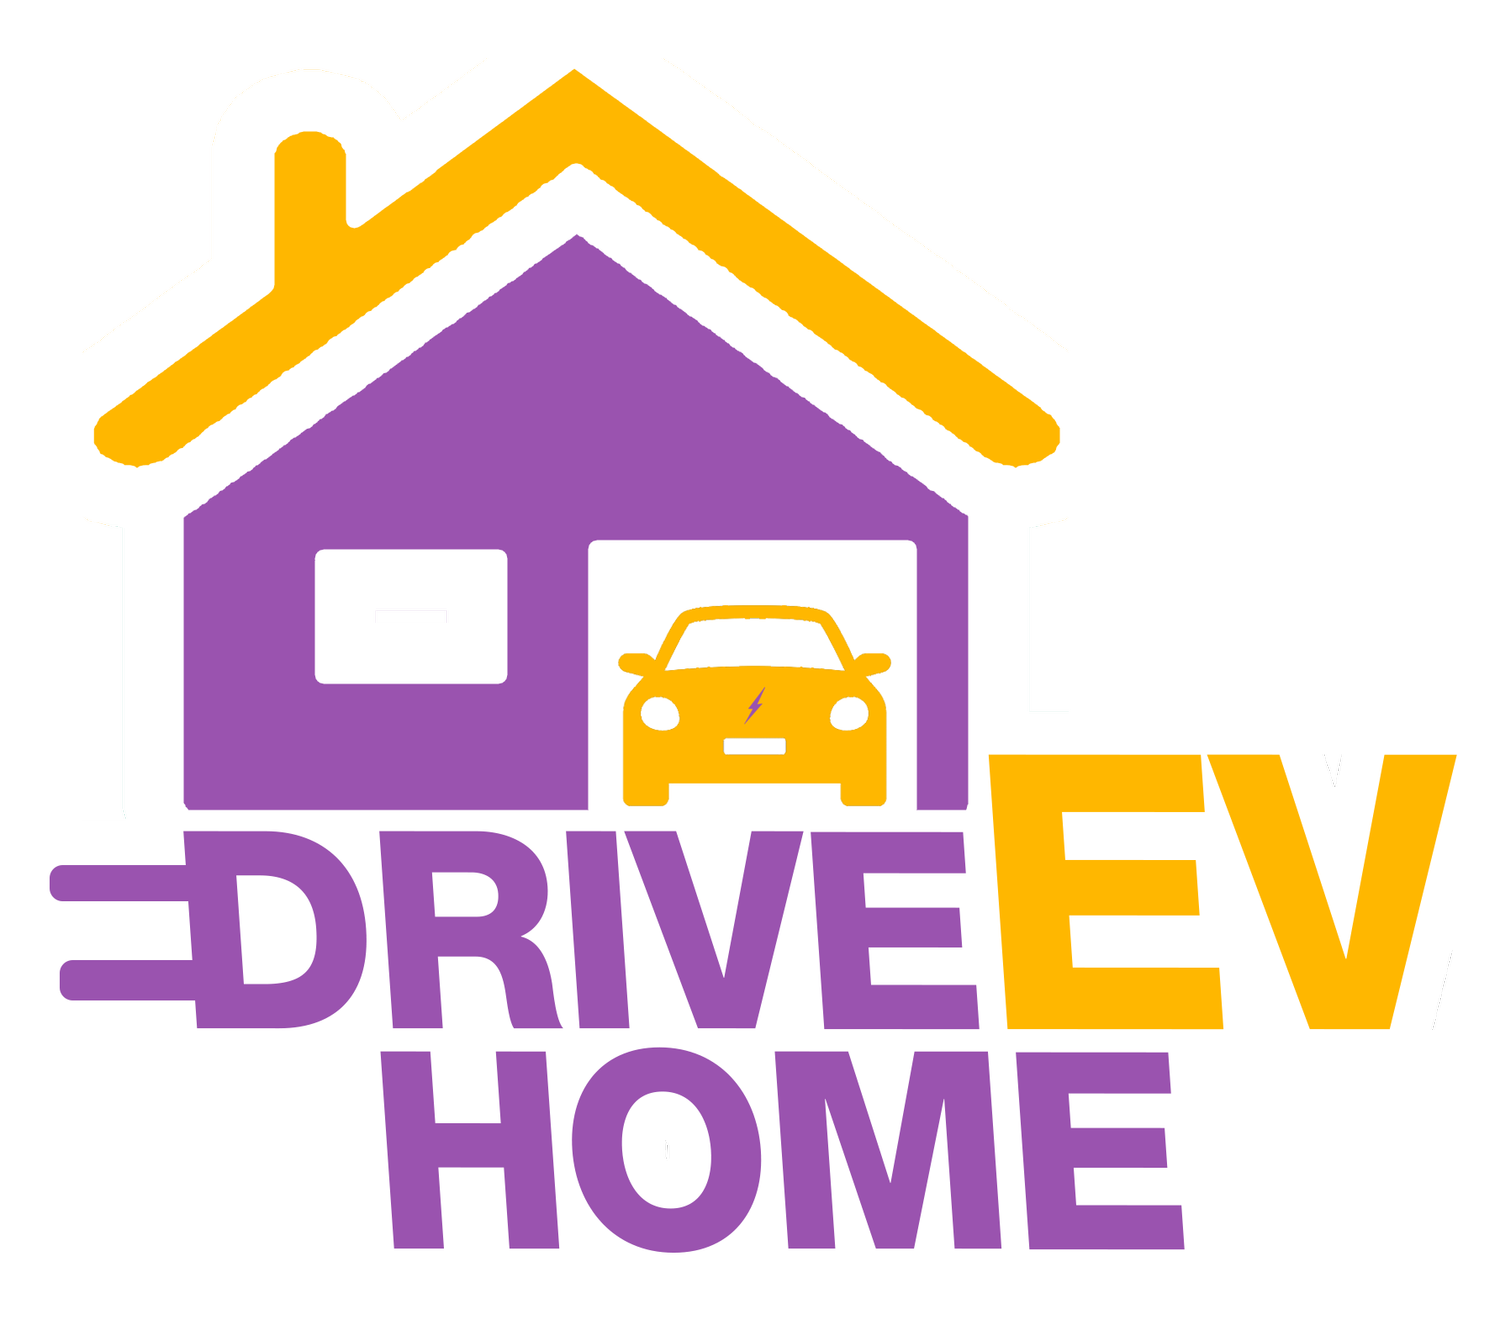 Drive EV HOME